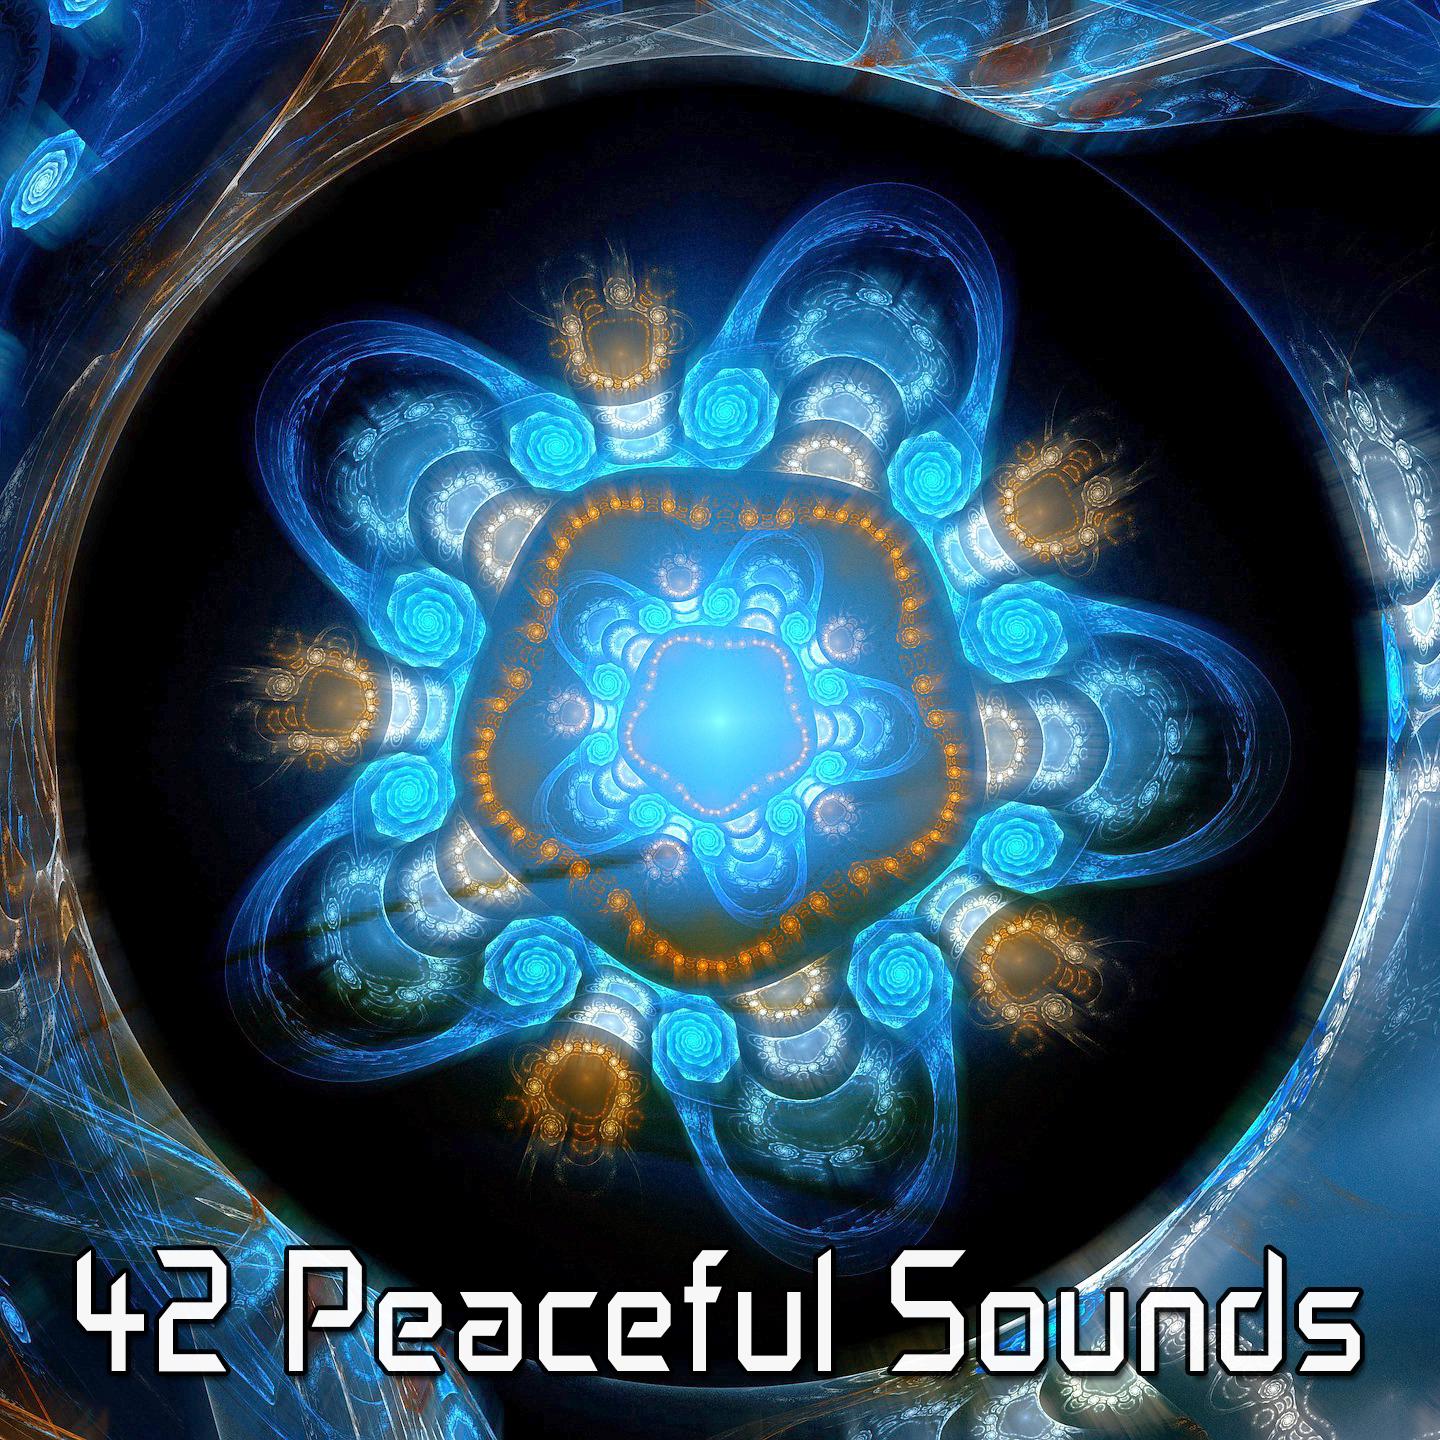 42 Peaceful Sounds